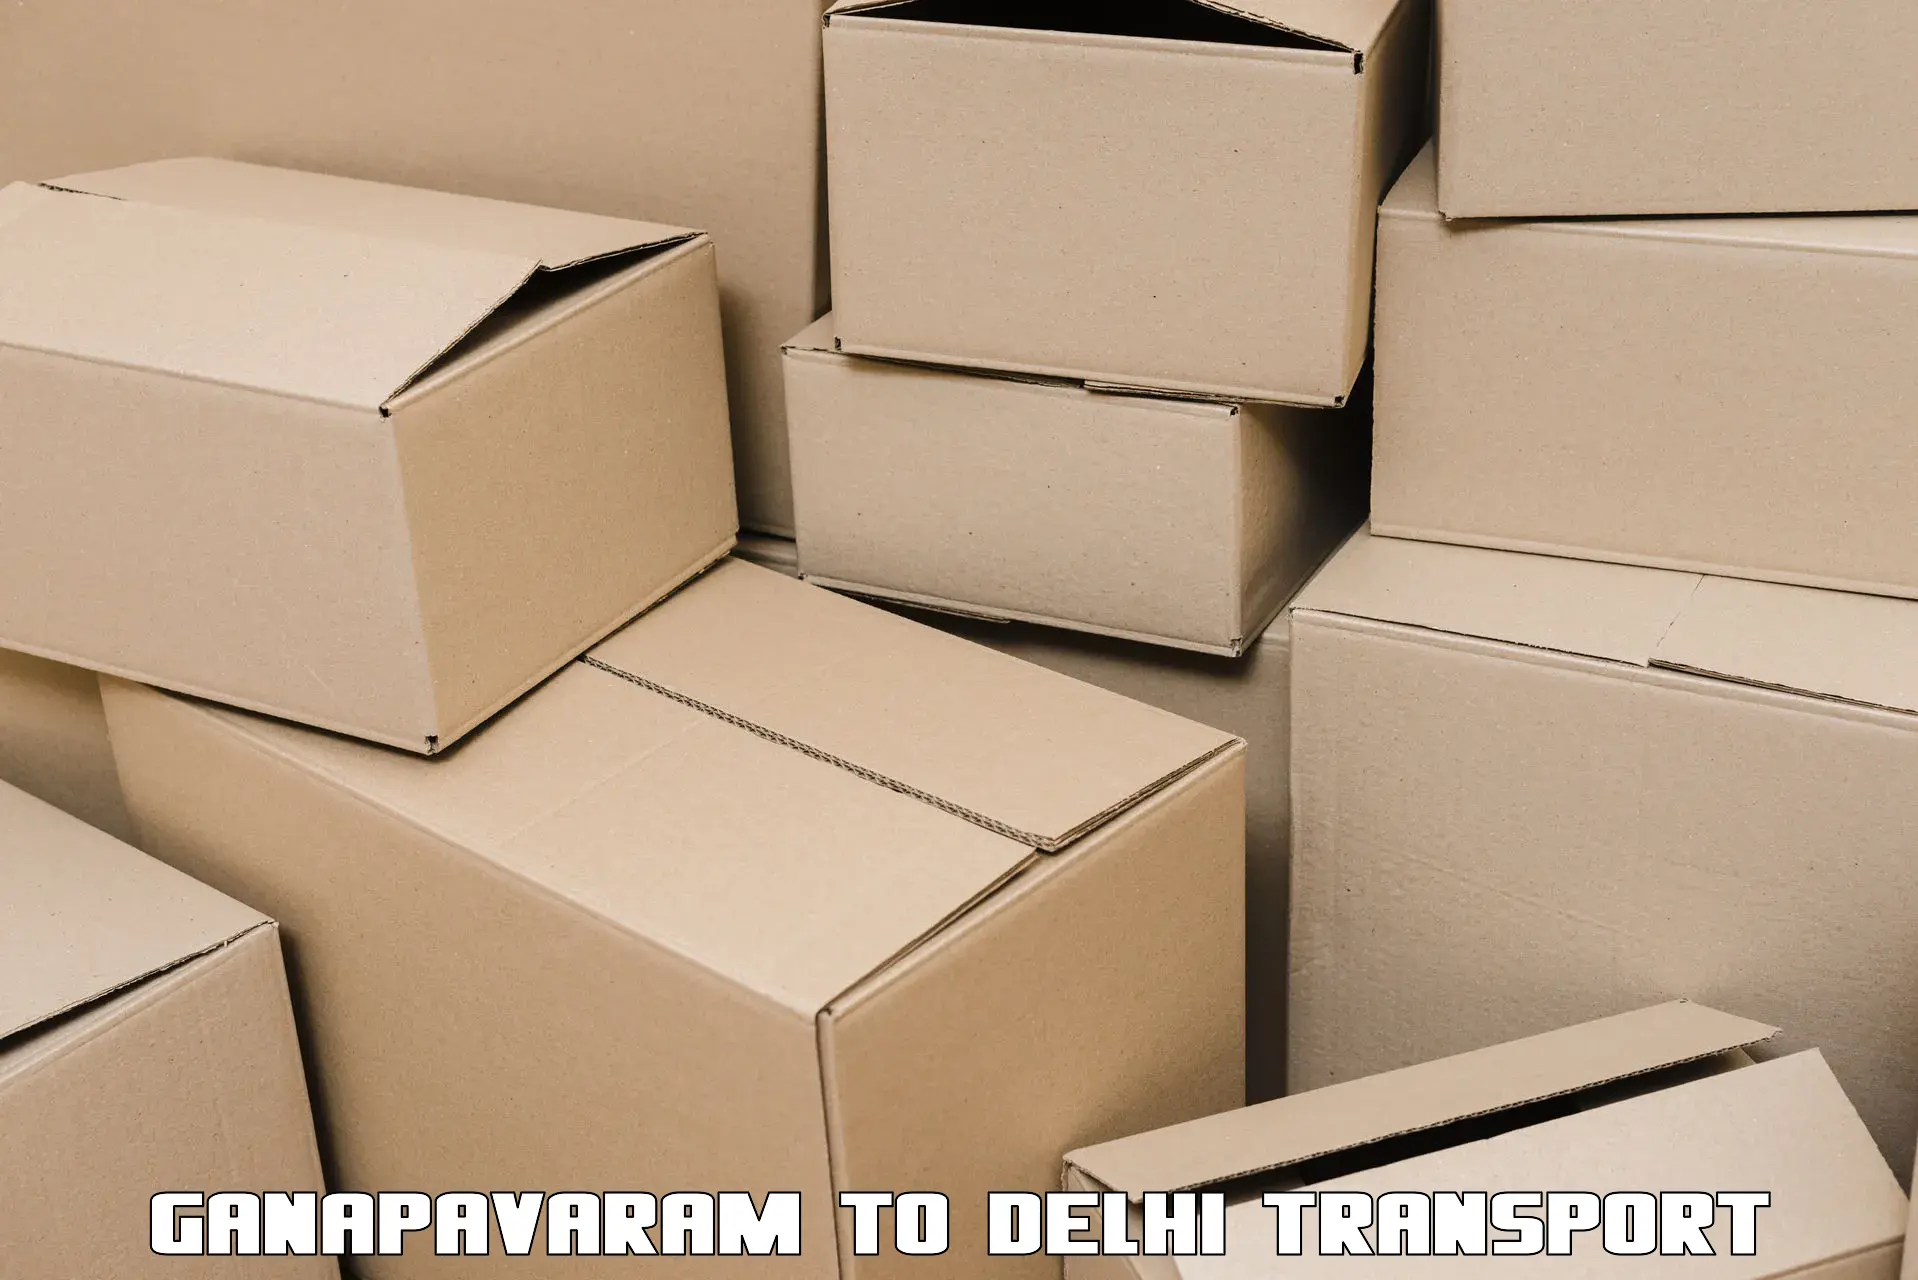 Daily transport service Ganapavaram to Jamia Millia Islamia New Delhi